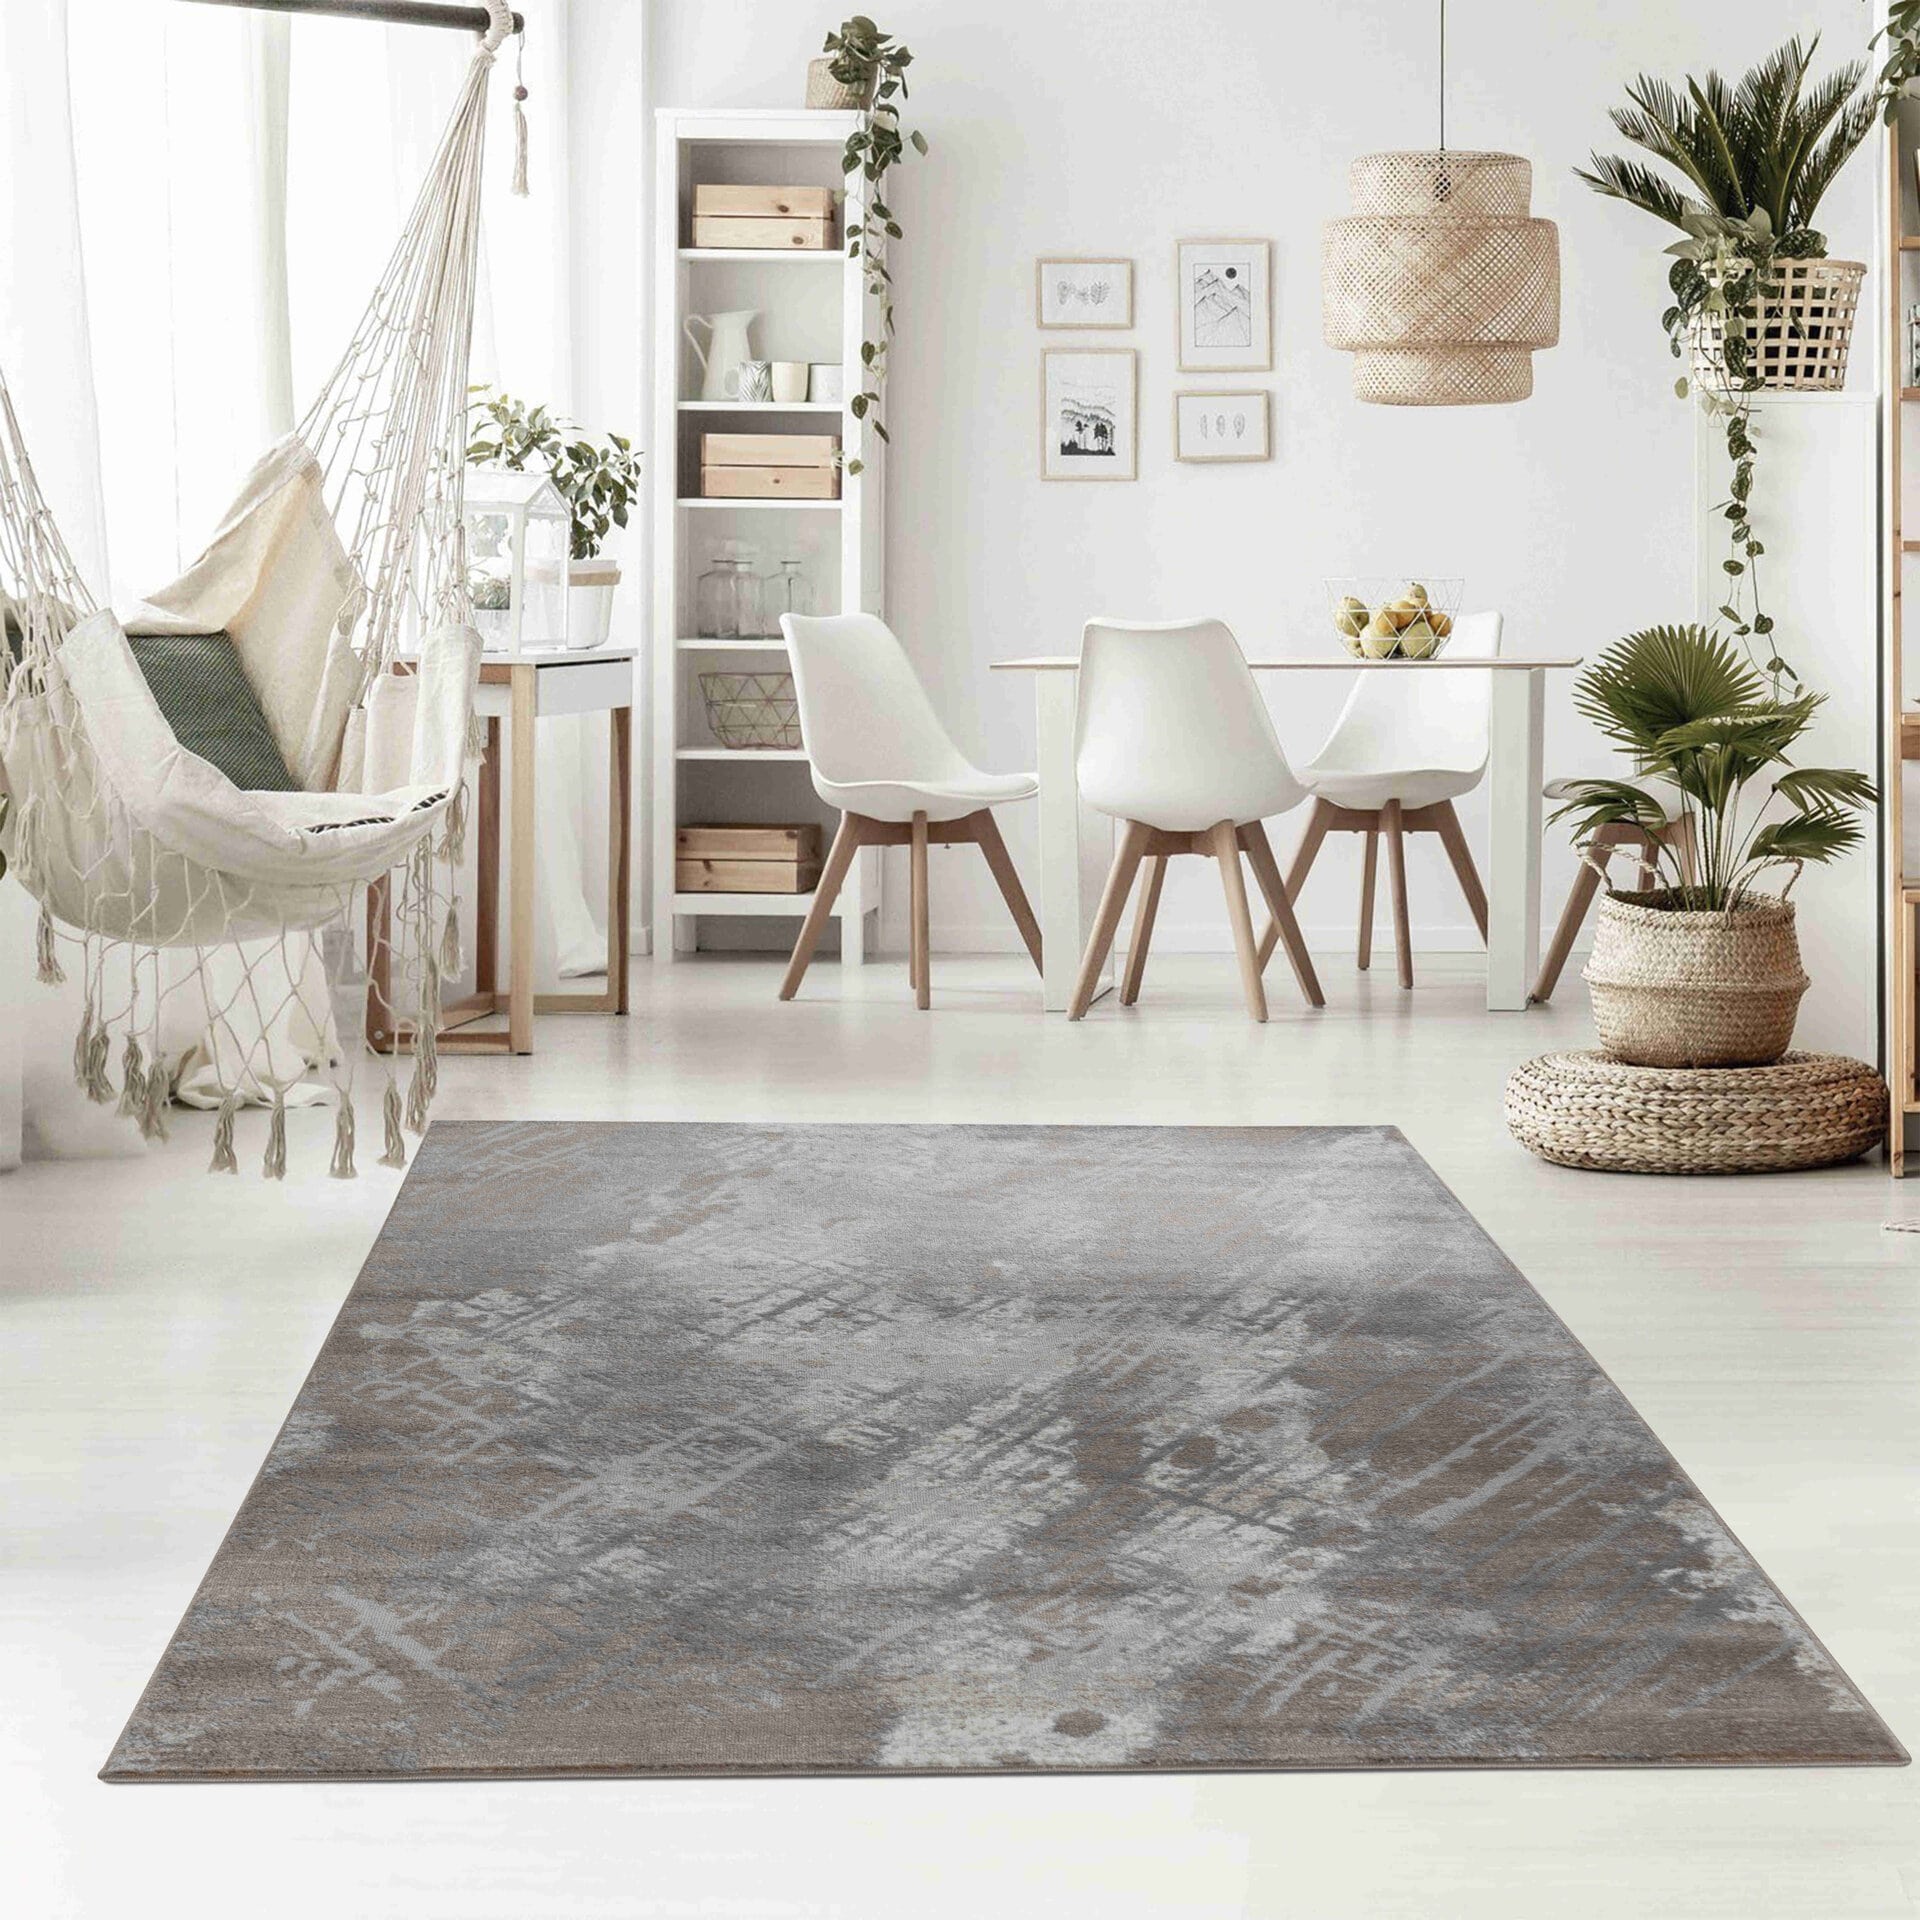 Abstract Contemporary Brown Grey Indoor Area Rug